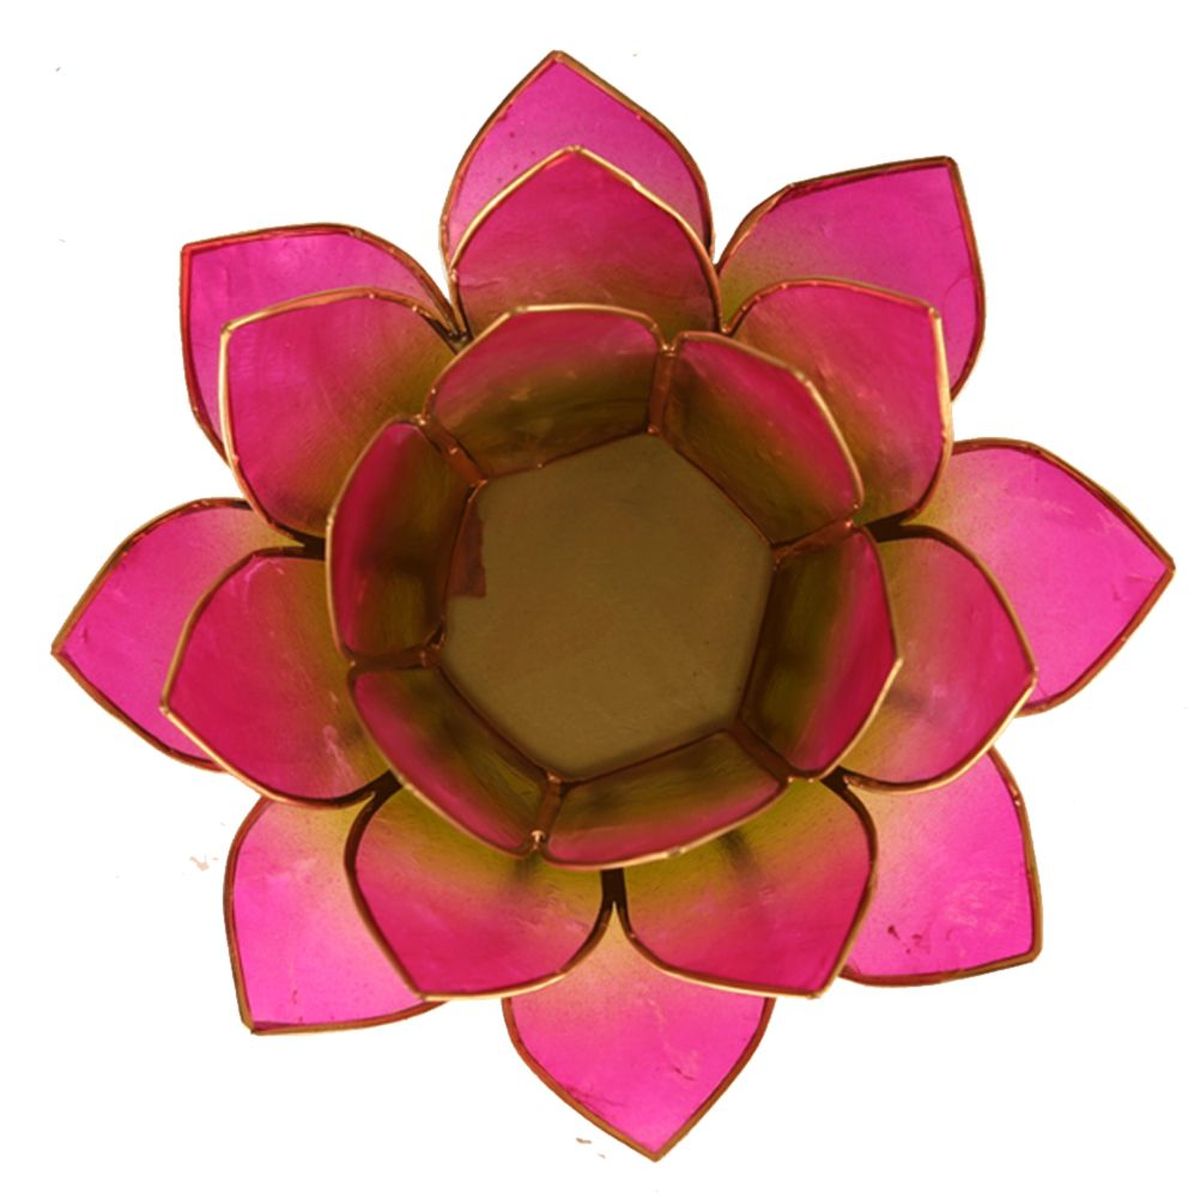 Lotus candleholder Pink and Green goldlining